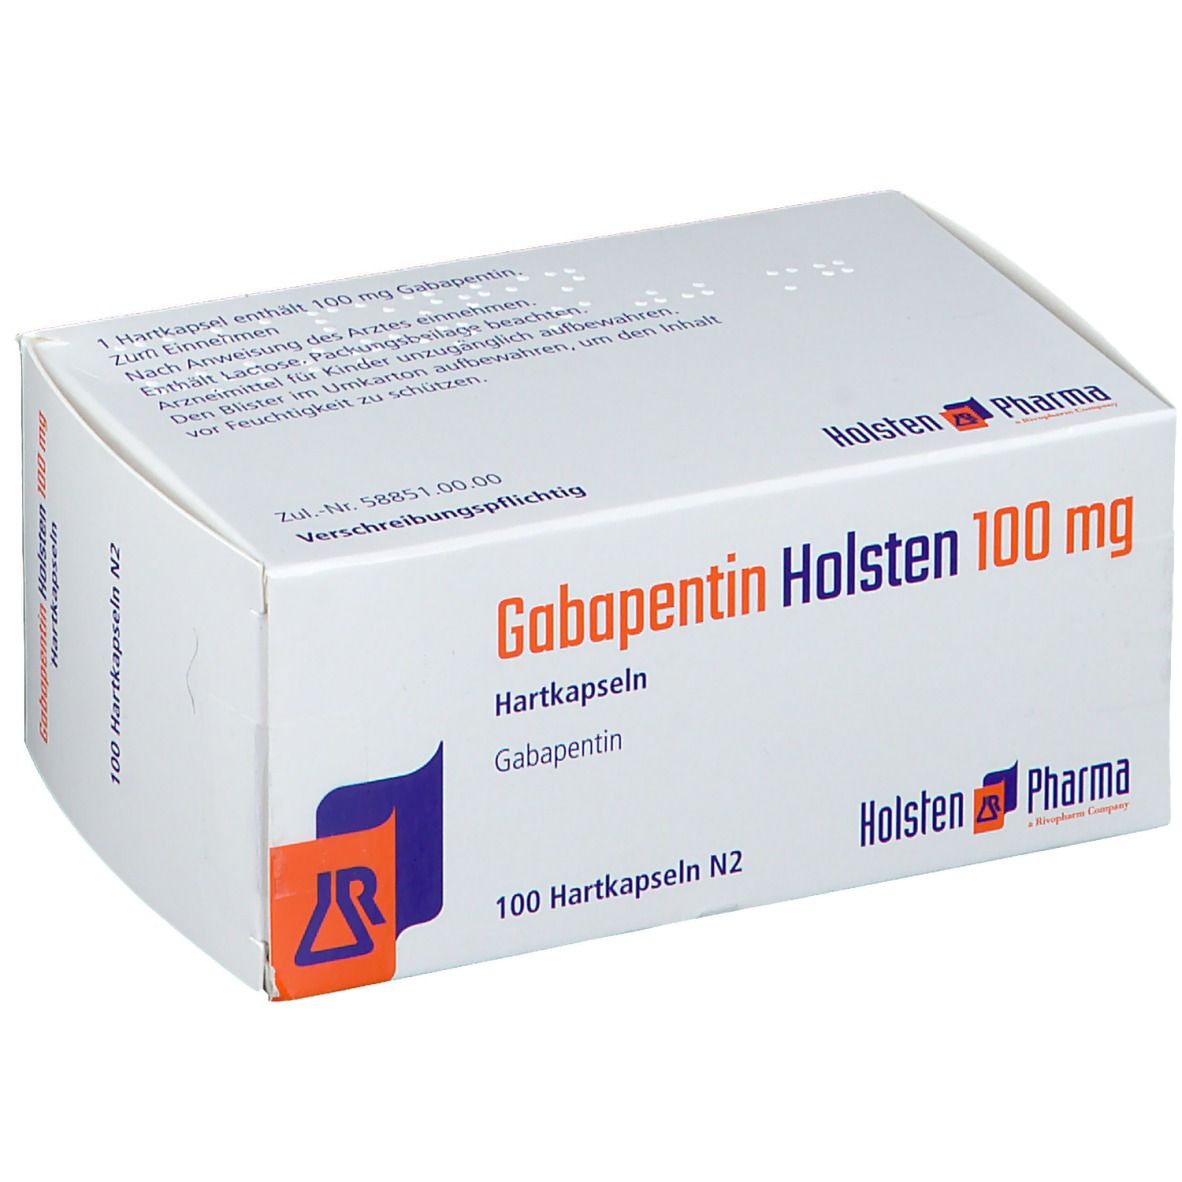 Gabapentin Holsten 100 mg